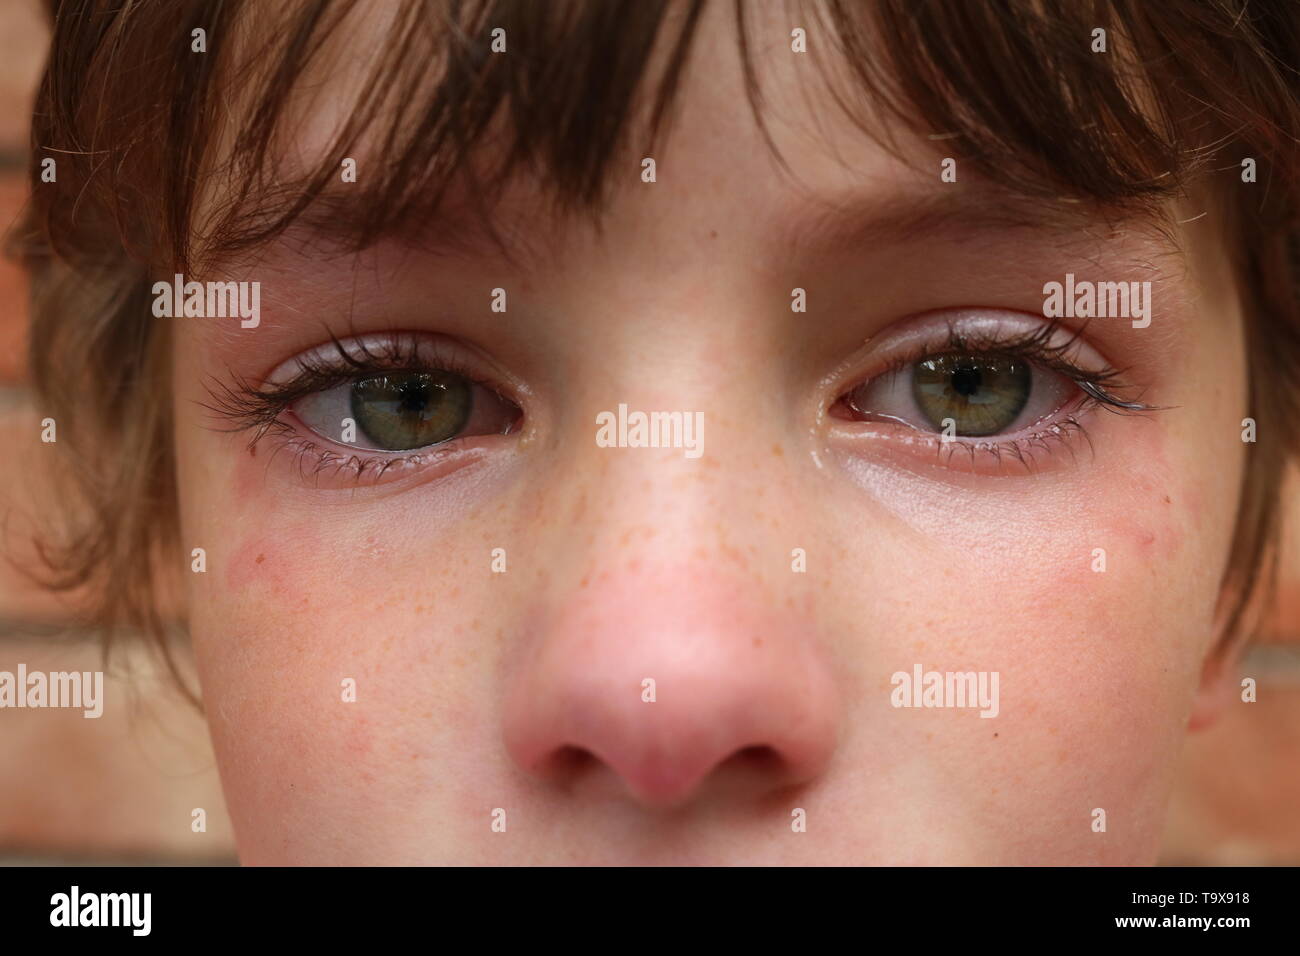 Makroaufnahme der Augen und der Nase eines umgekippten Kind mit großen grünen Augen Stockfoto